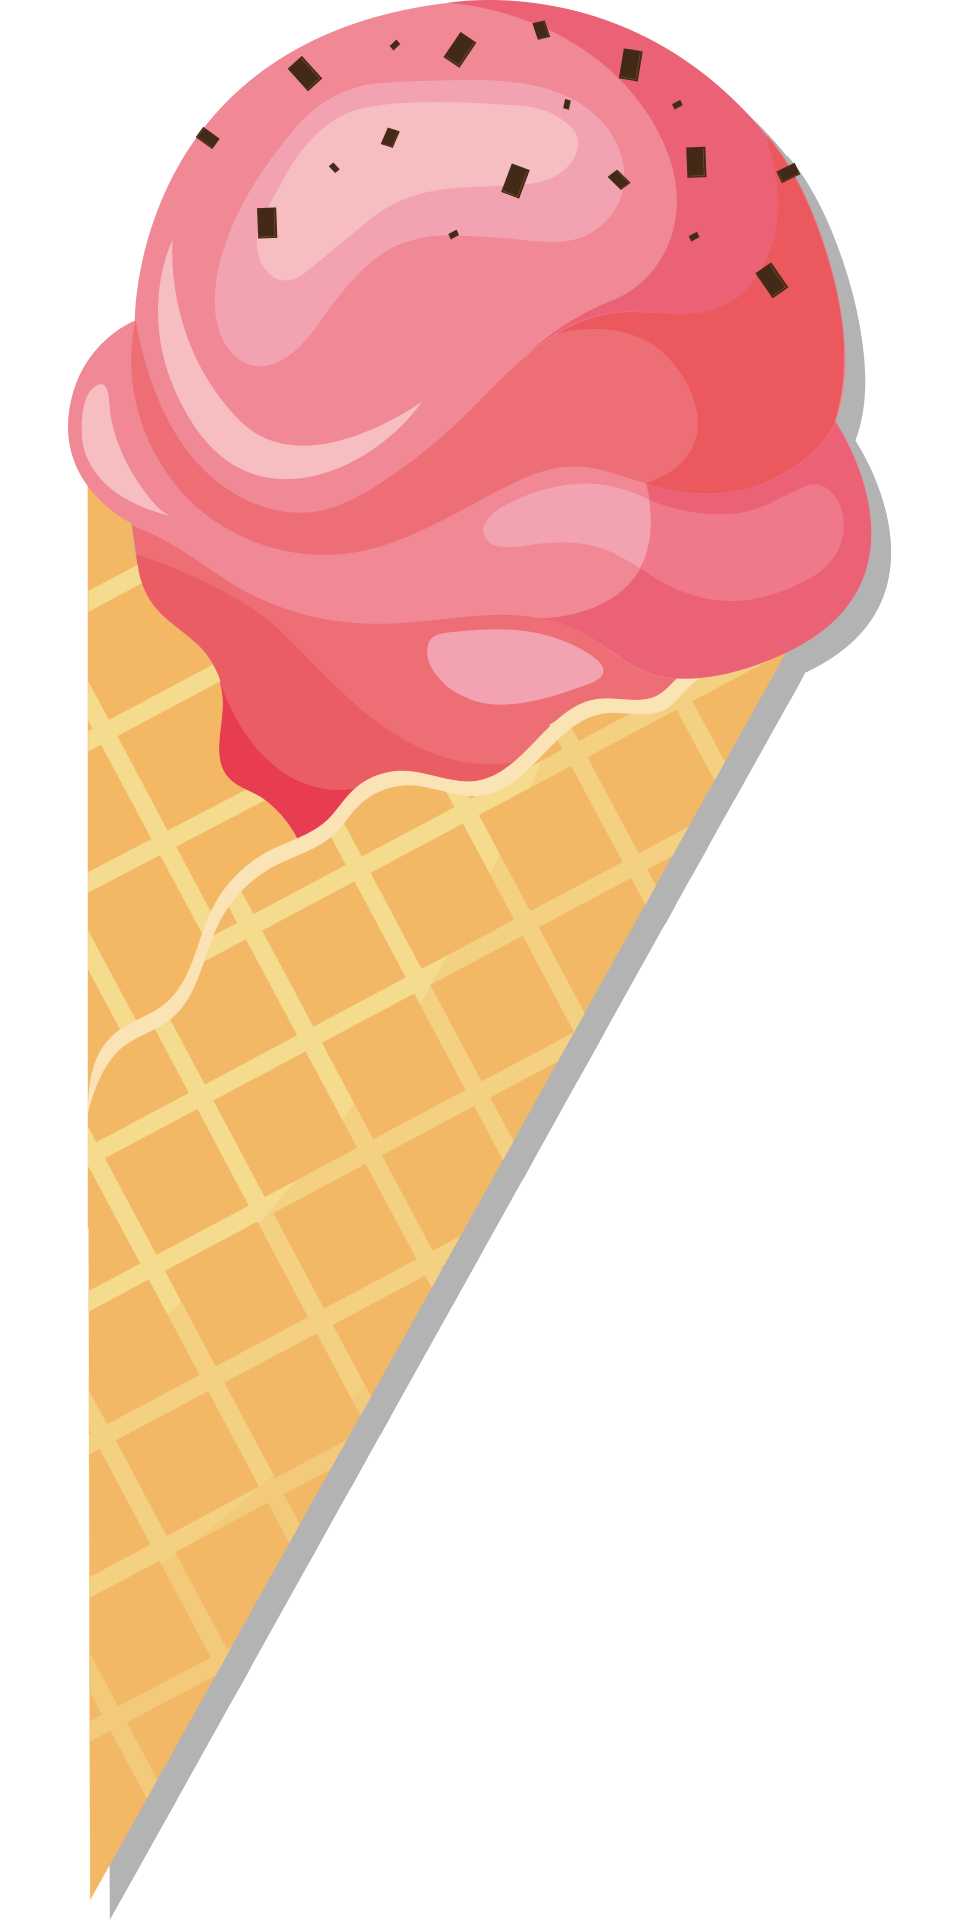 冰冰淇淋华夫甜点夏天甜蛋卷冰淇淋华夫饼干杯食品草莓冰淇淋粉红色